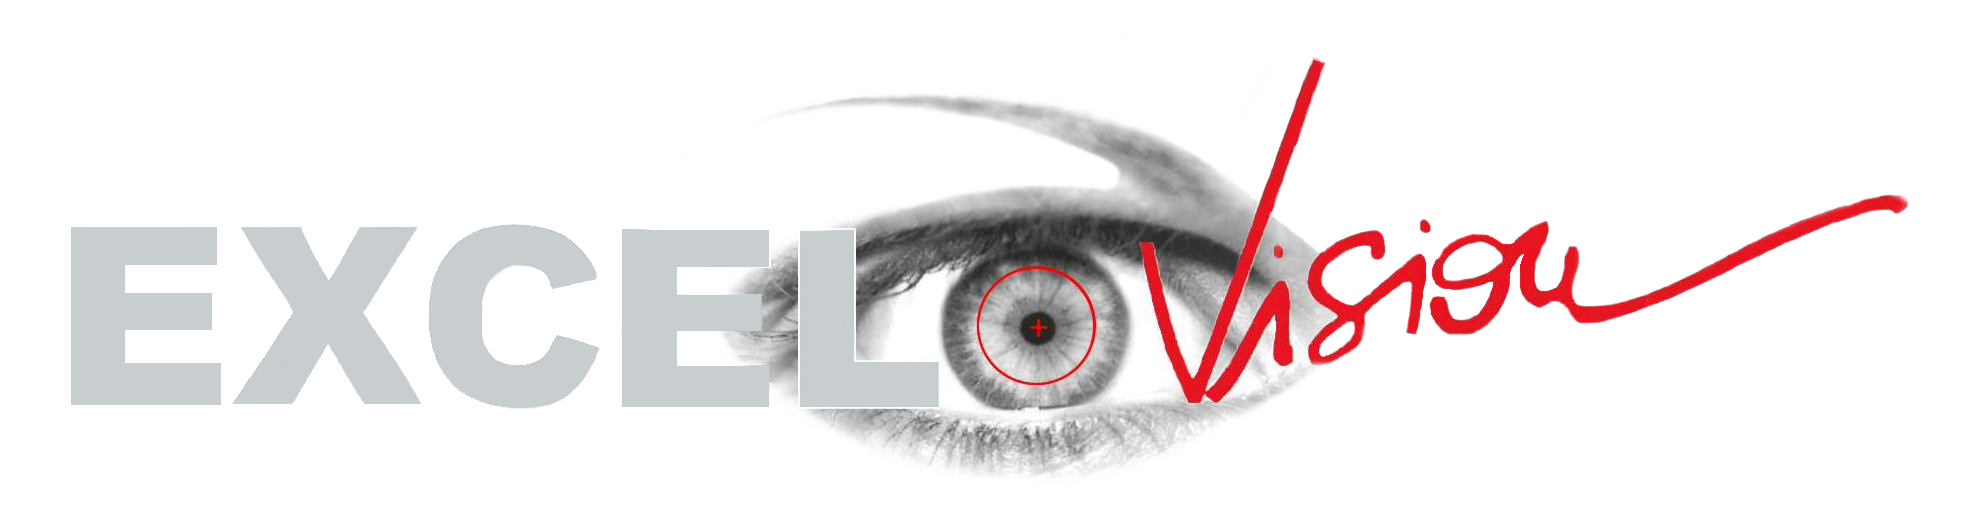 excel-vision logo